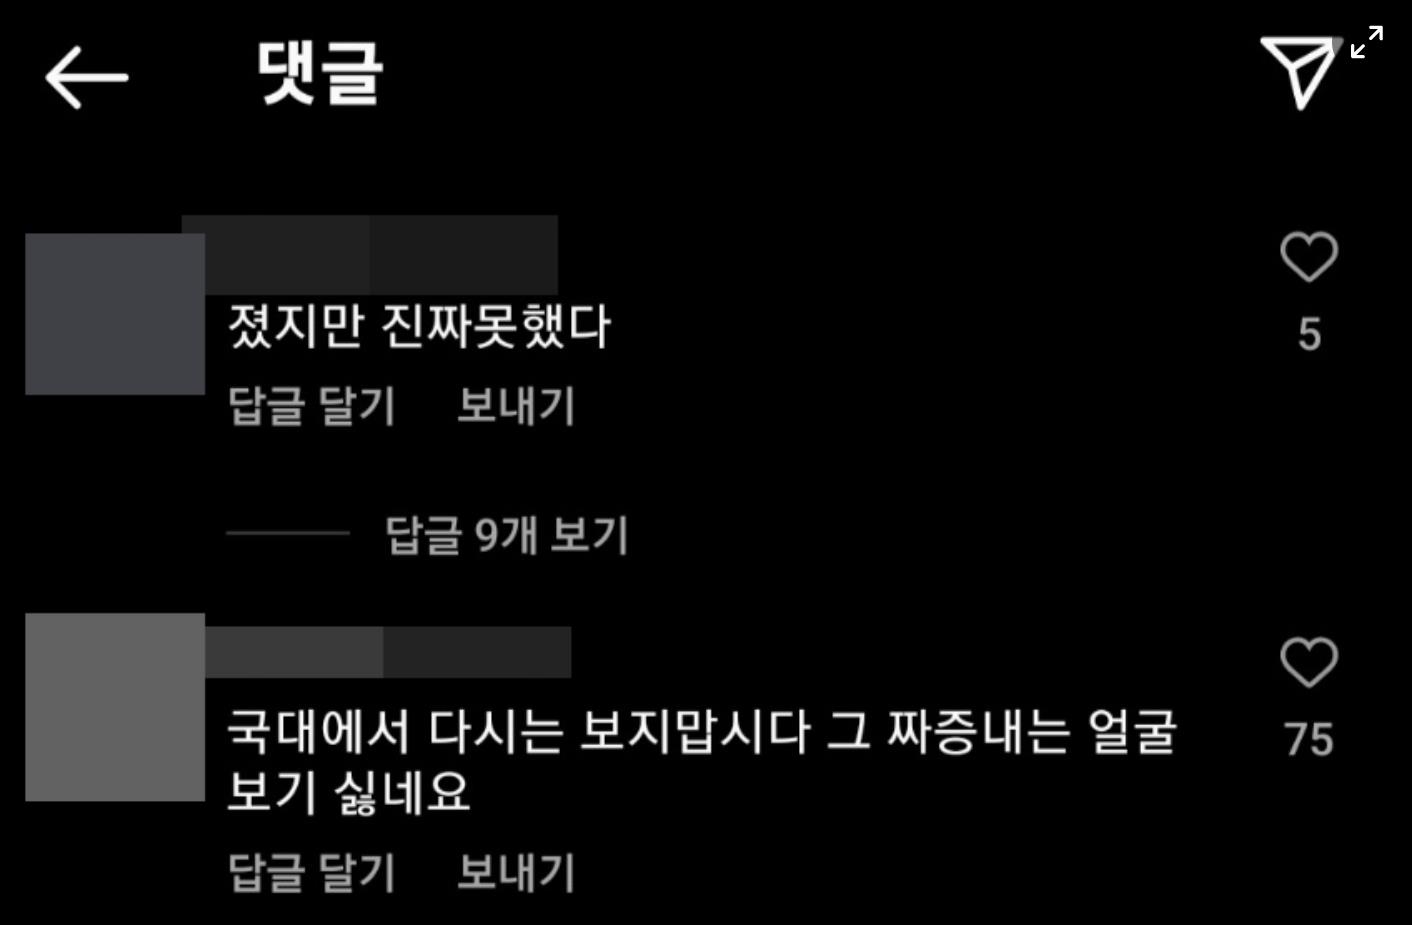 孙兴慜个人社交账号的评论截图：有韩国网民向其写道，“比赛输了，你可真差劲”、“希望再也不要在国家队中看到你。讨厌看到你那惹人烦的脸”。